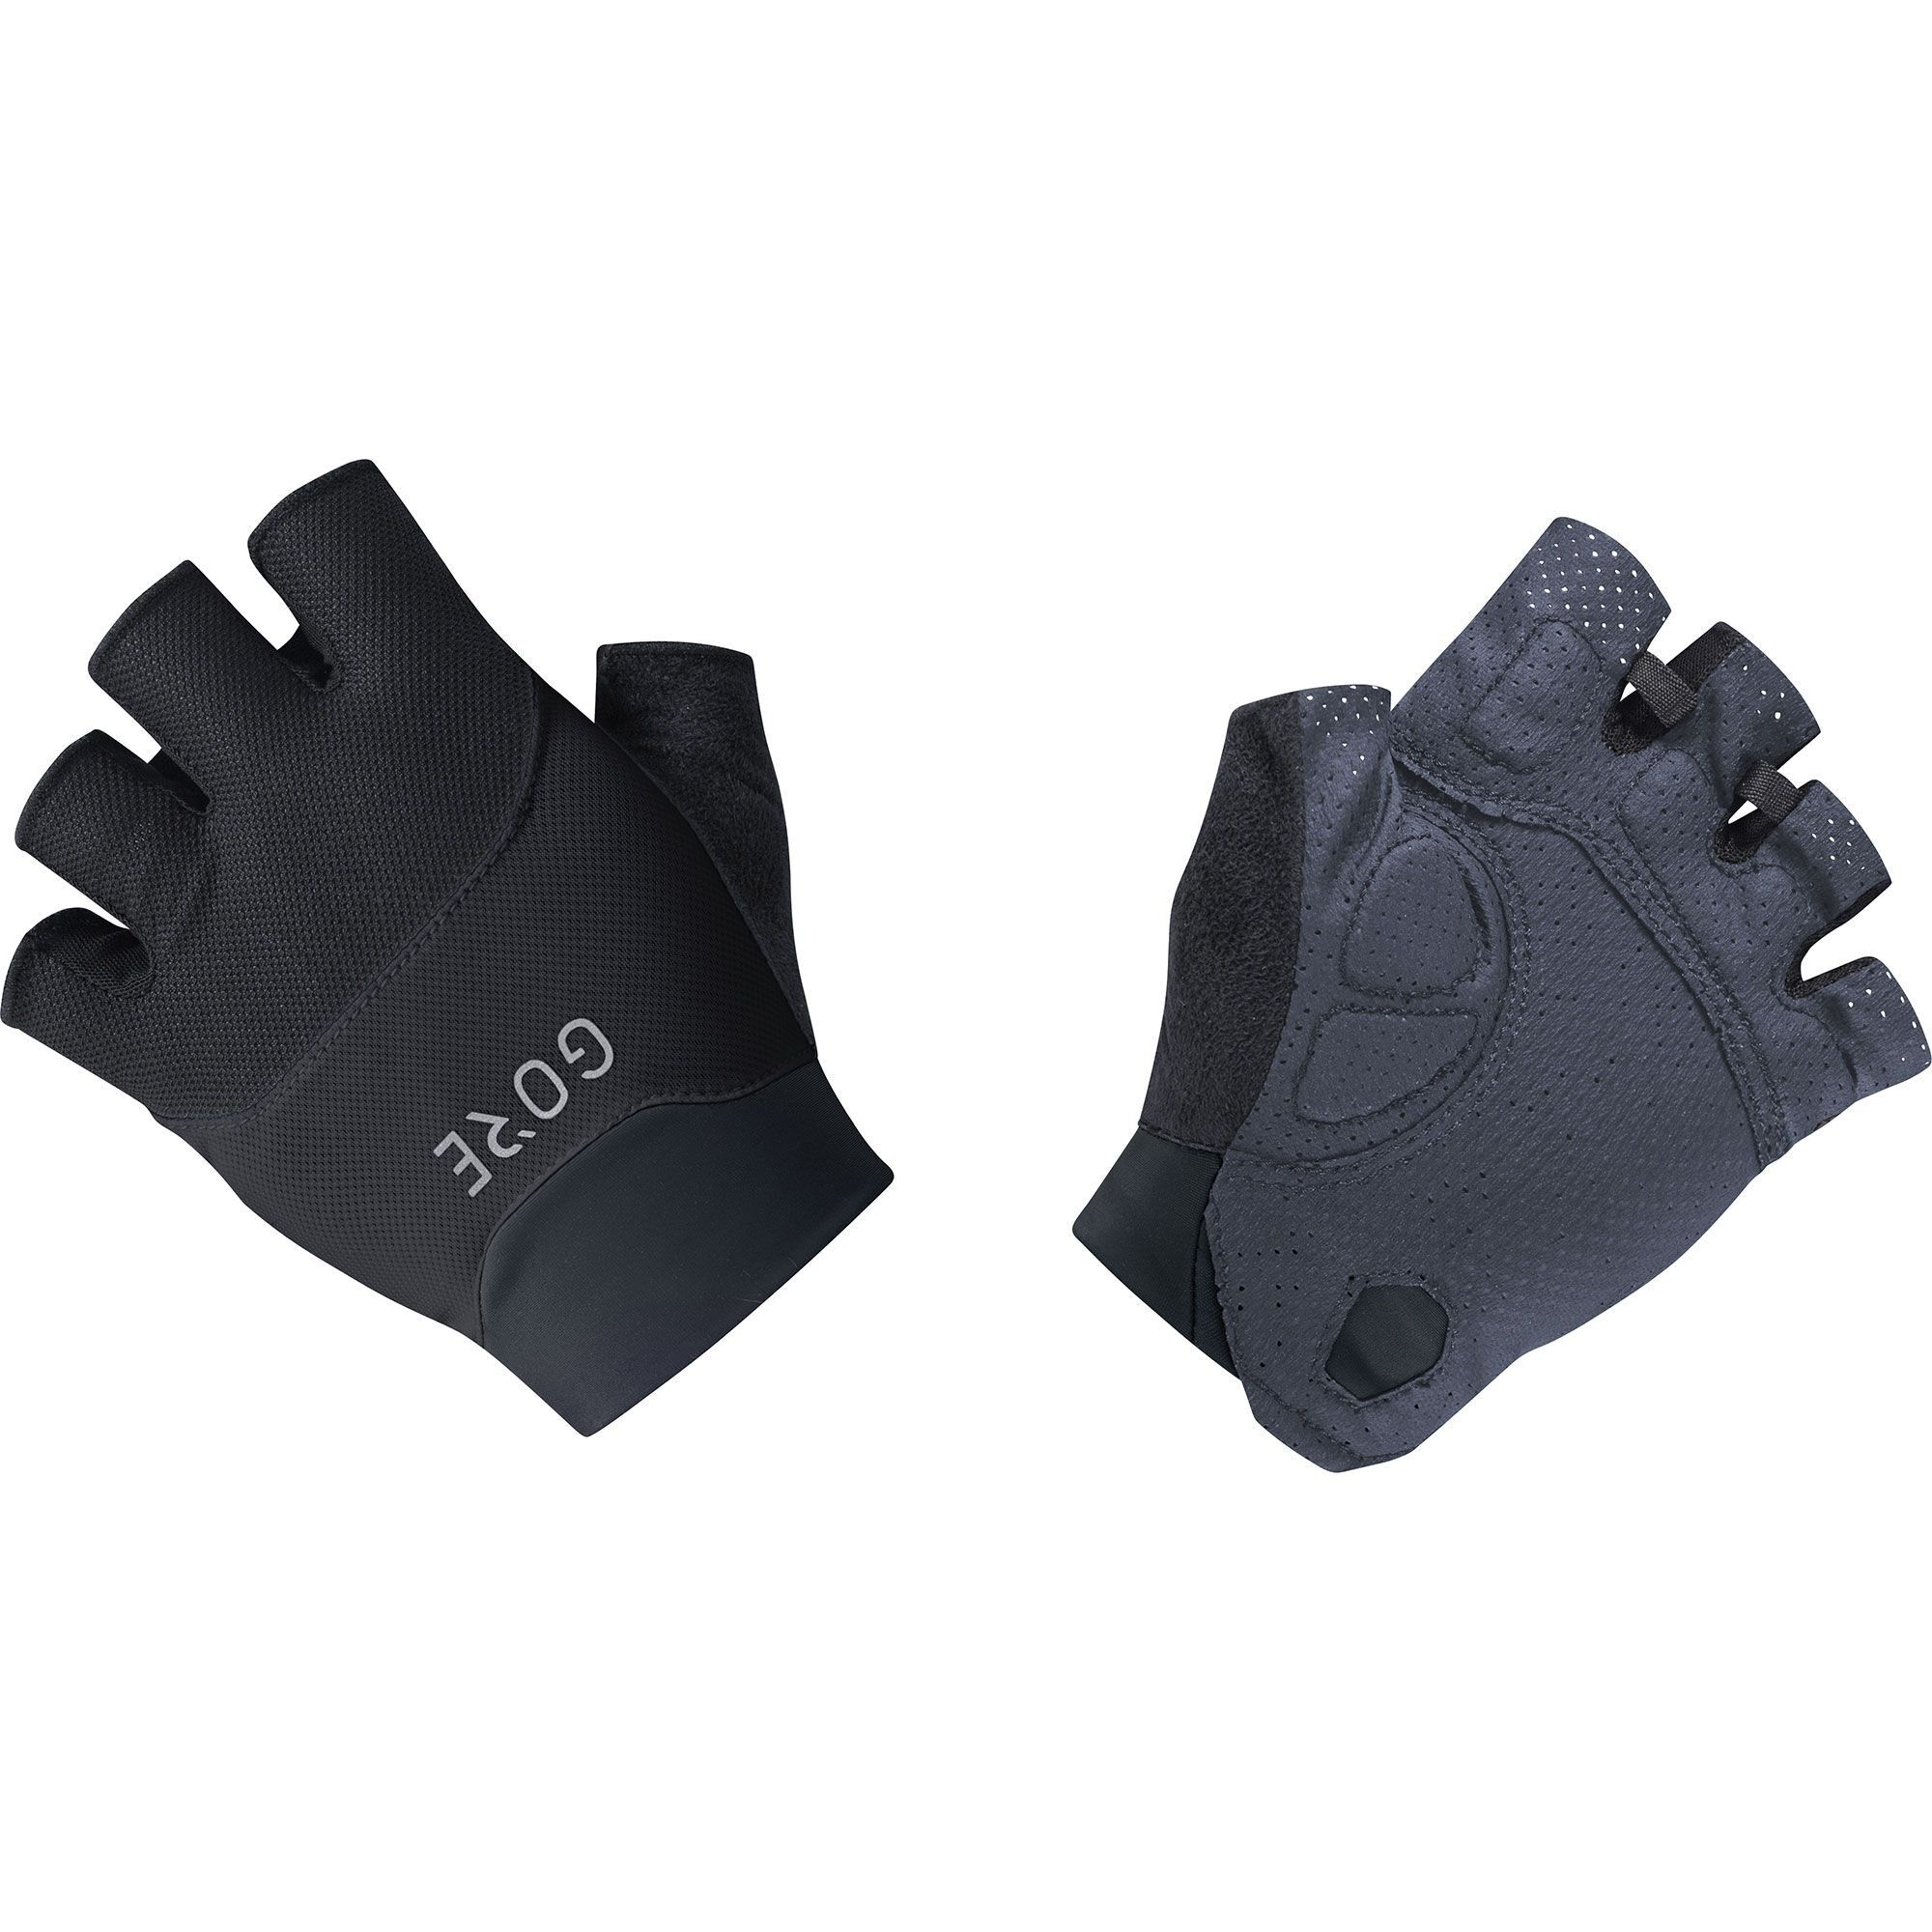 Gore Wear C5 Short Vent Gloves - Short finger gloves